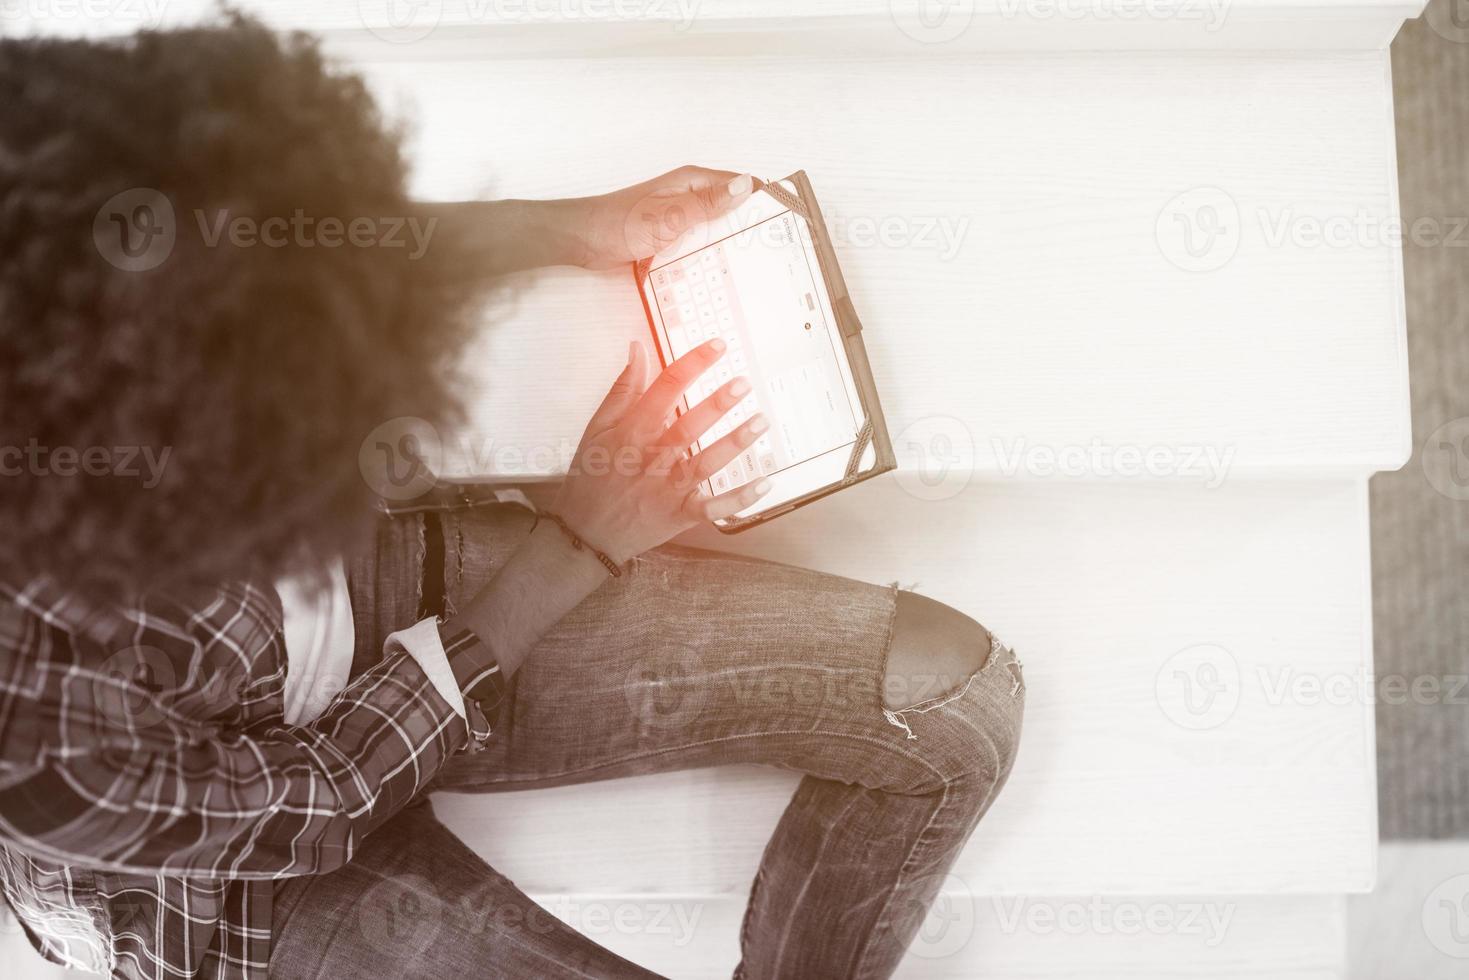 femme noire à l'aide de sa tablette électronique photo